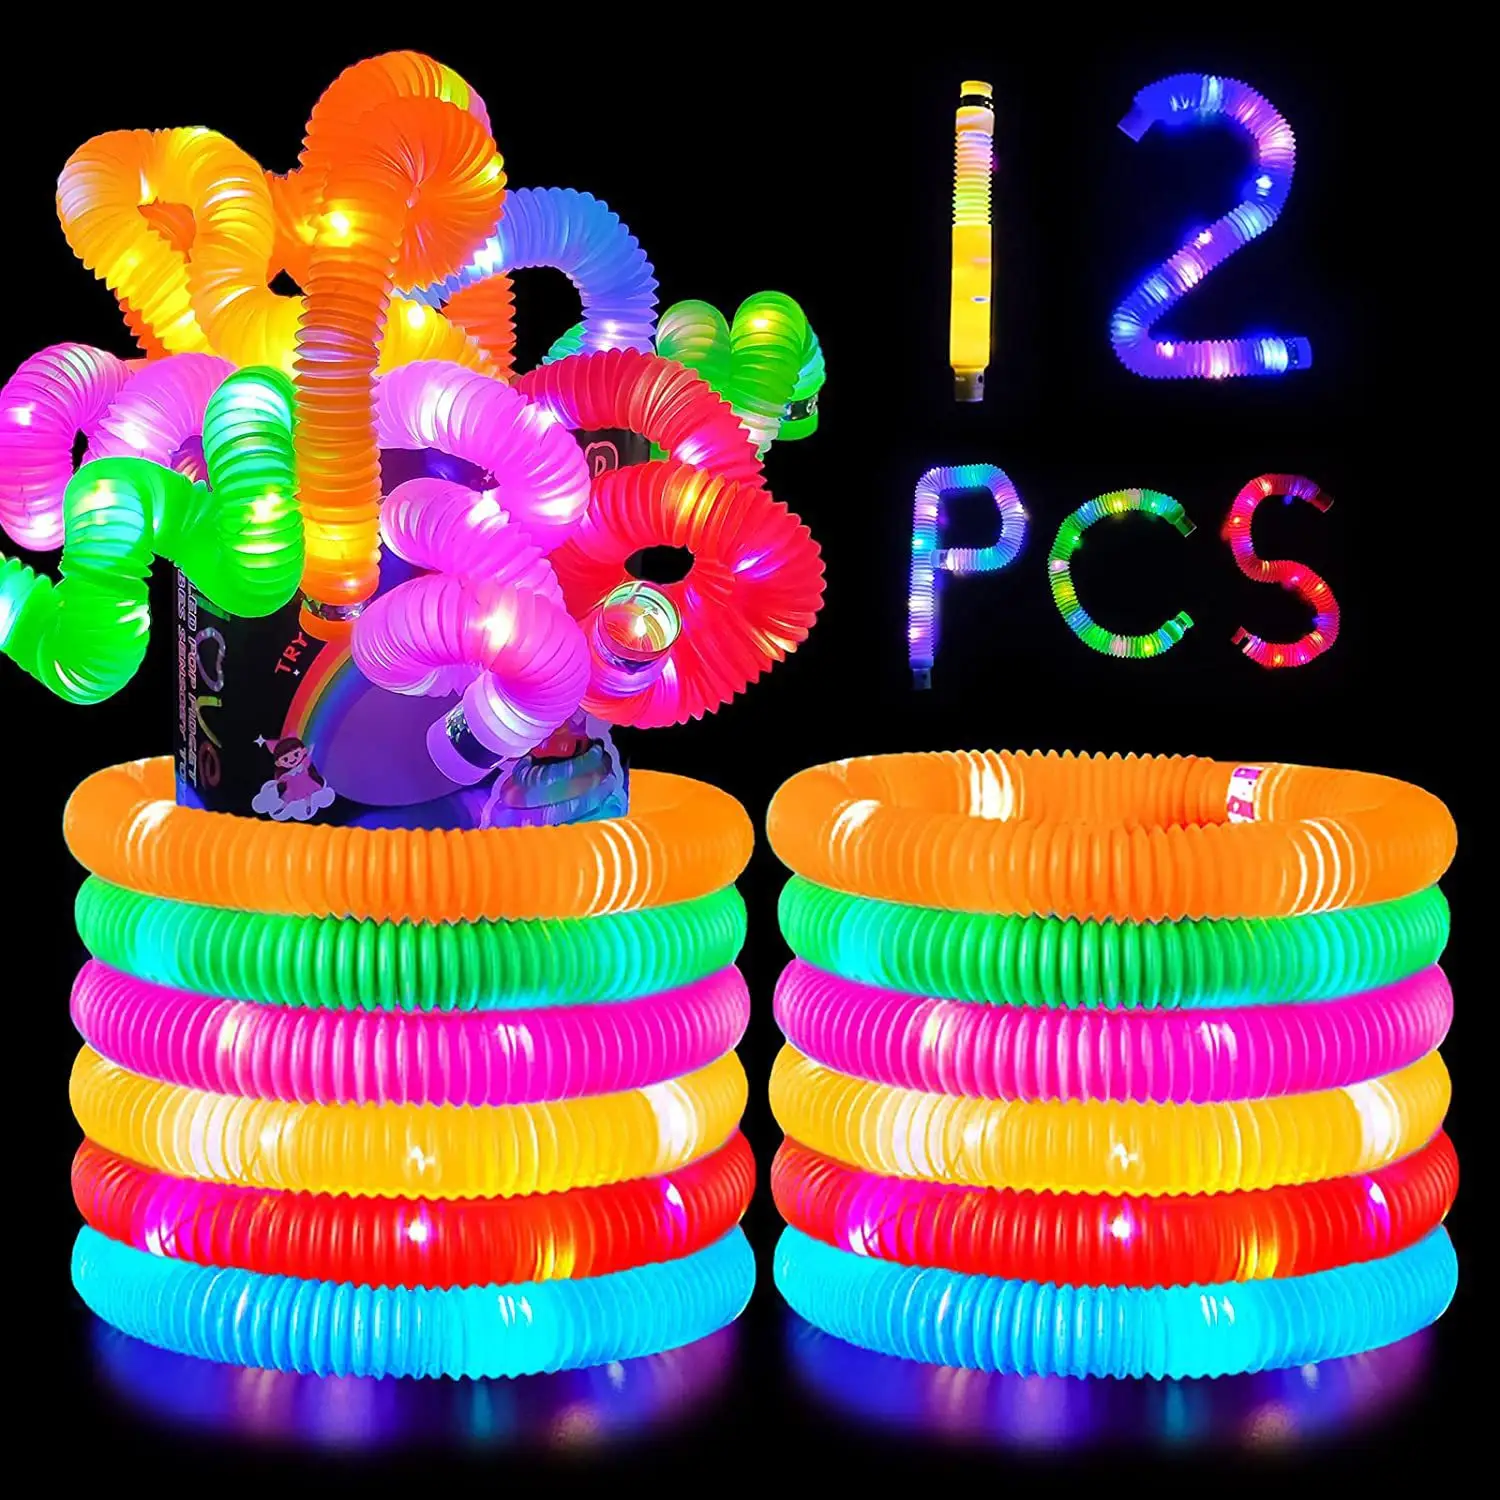 Tubes lumineux Pop Tubes lumineux à LED Vente en gros Bâtons lumineux Collier Bracelets Party Favors Jouets extensibles pour enfants